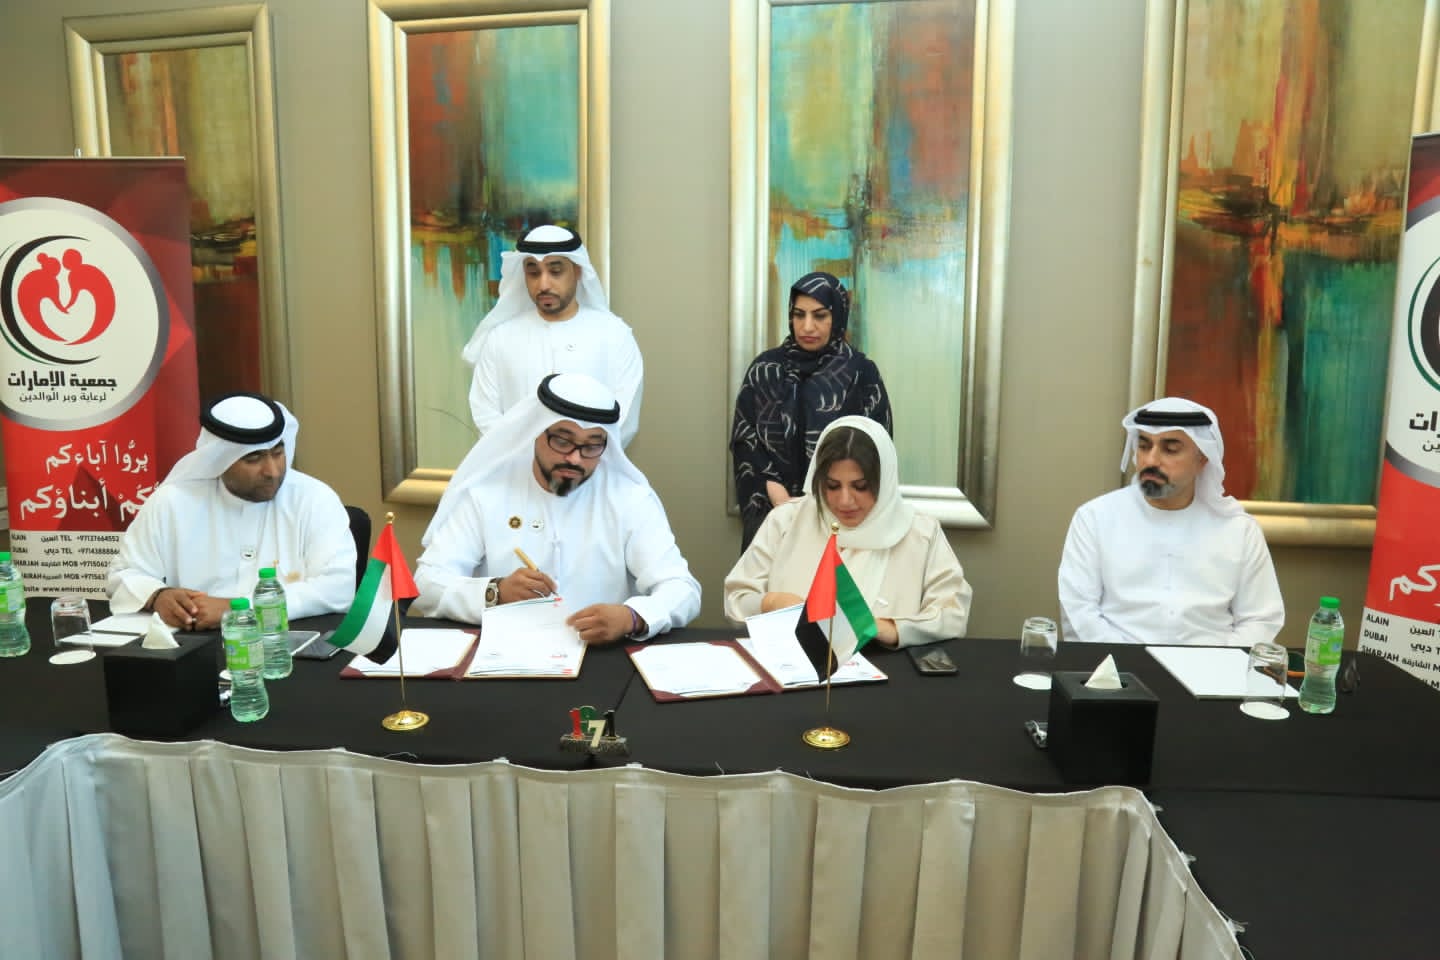 اتفاقية تعاون بين فريق "فخر زايد التطوعي" وجمعية الإمارات لرعاية وبر الوالدين